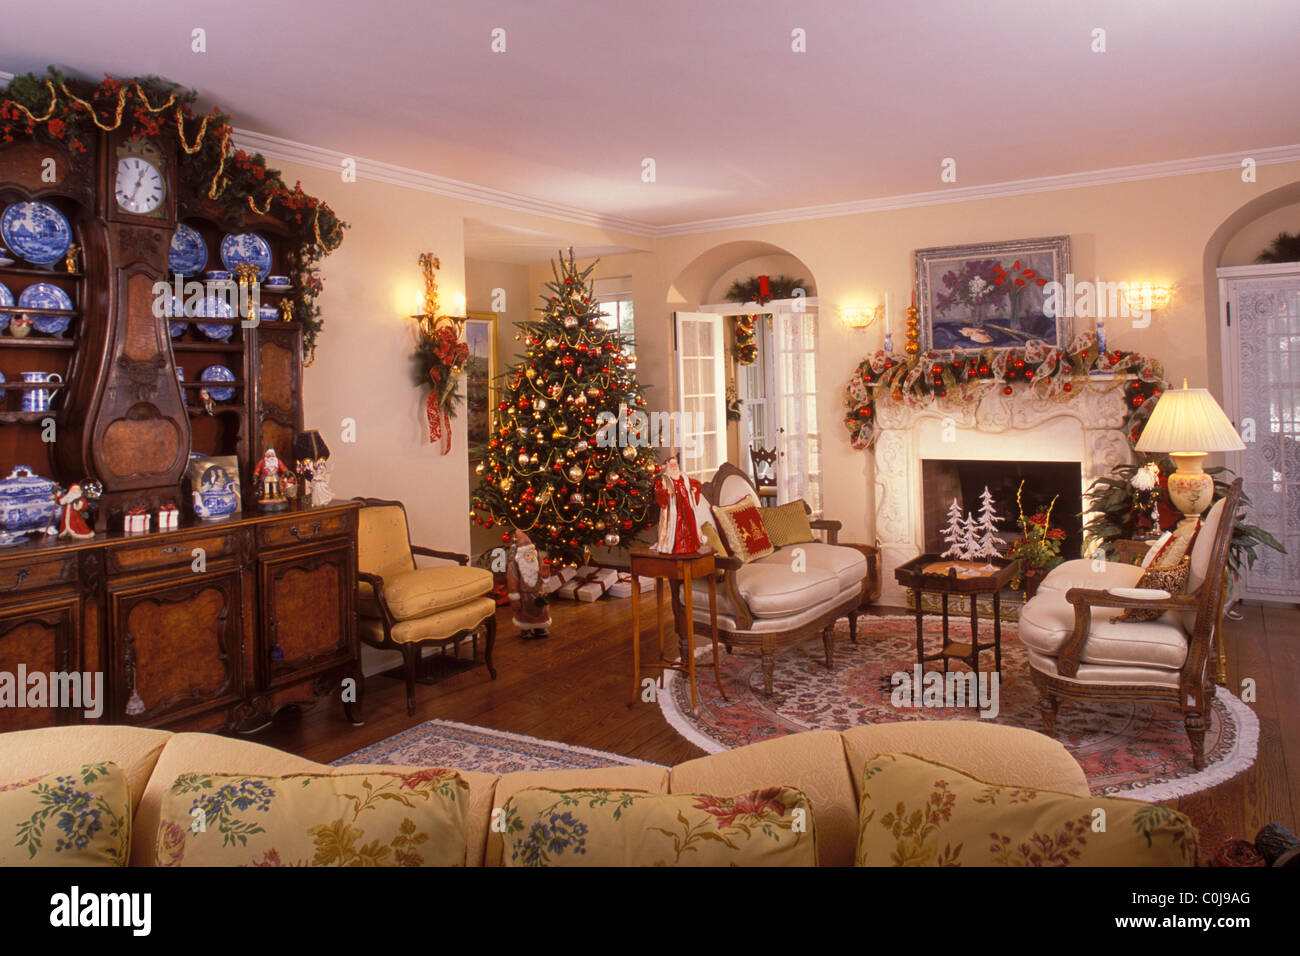 Immagini Natale Usa.Soggiorno In Stile Vittoriano Decorato A Casa Per Le Vacanze Di Natale U S A Foto Stock Alamy